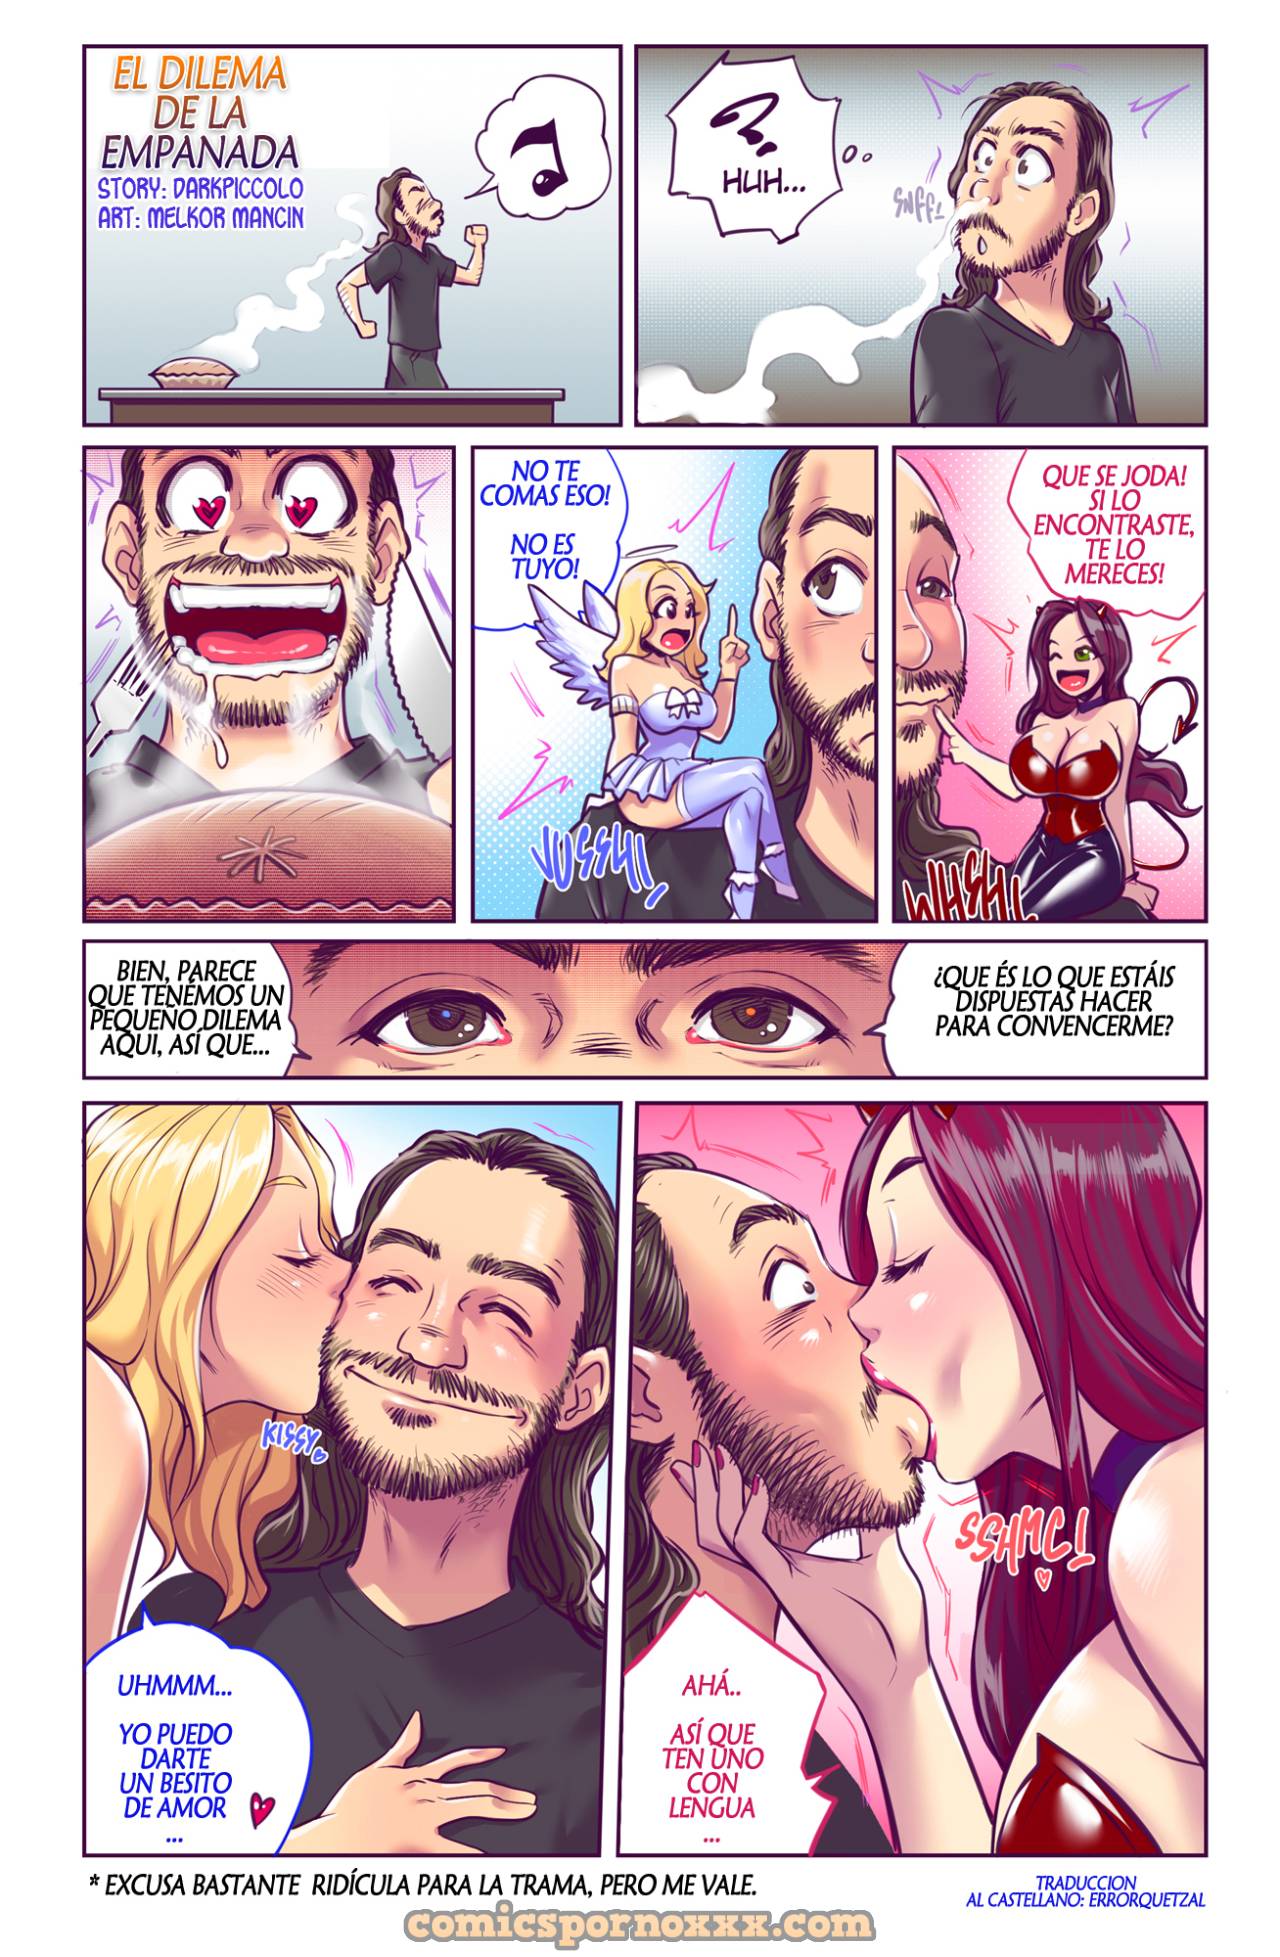 El Dilema de la Empanada  - Imagen 1  - Comics Porno - Hentai Manga - Cartoon XXX